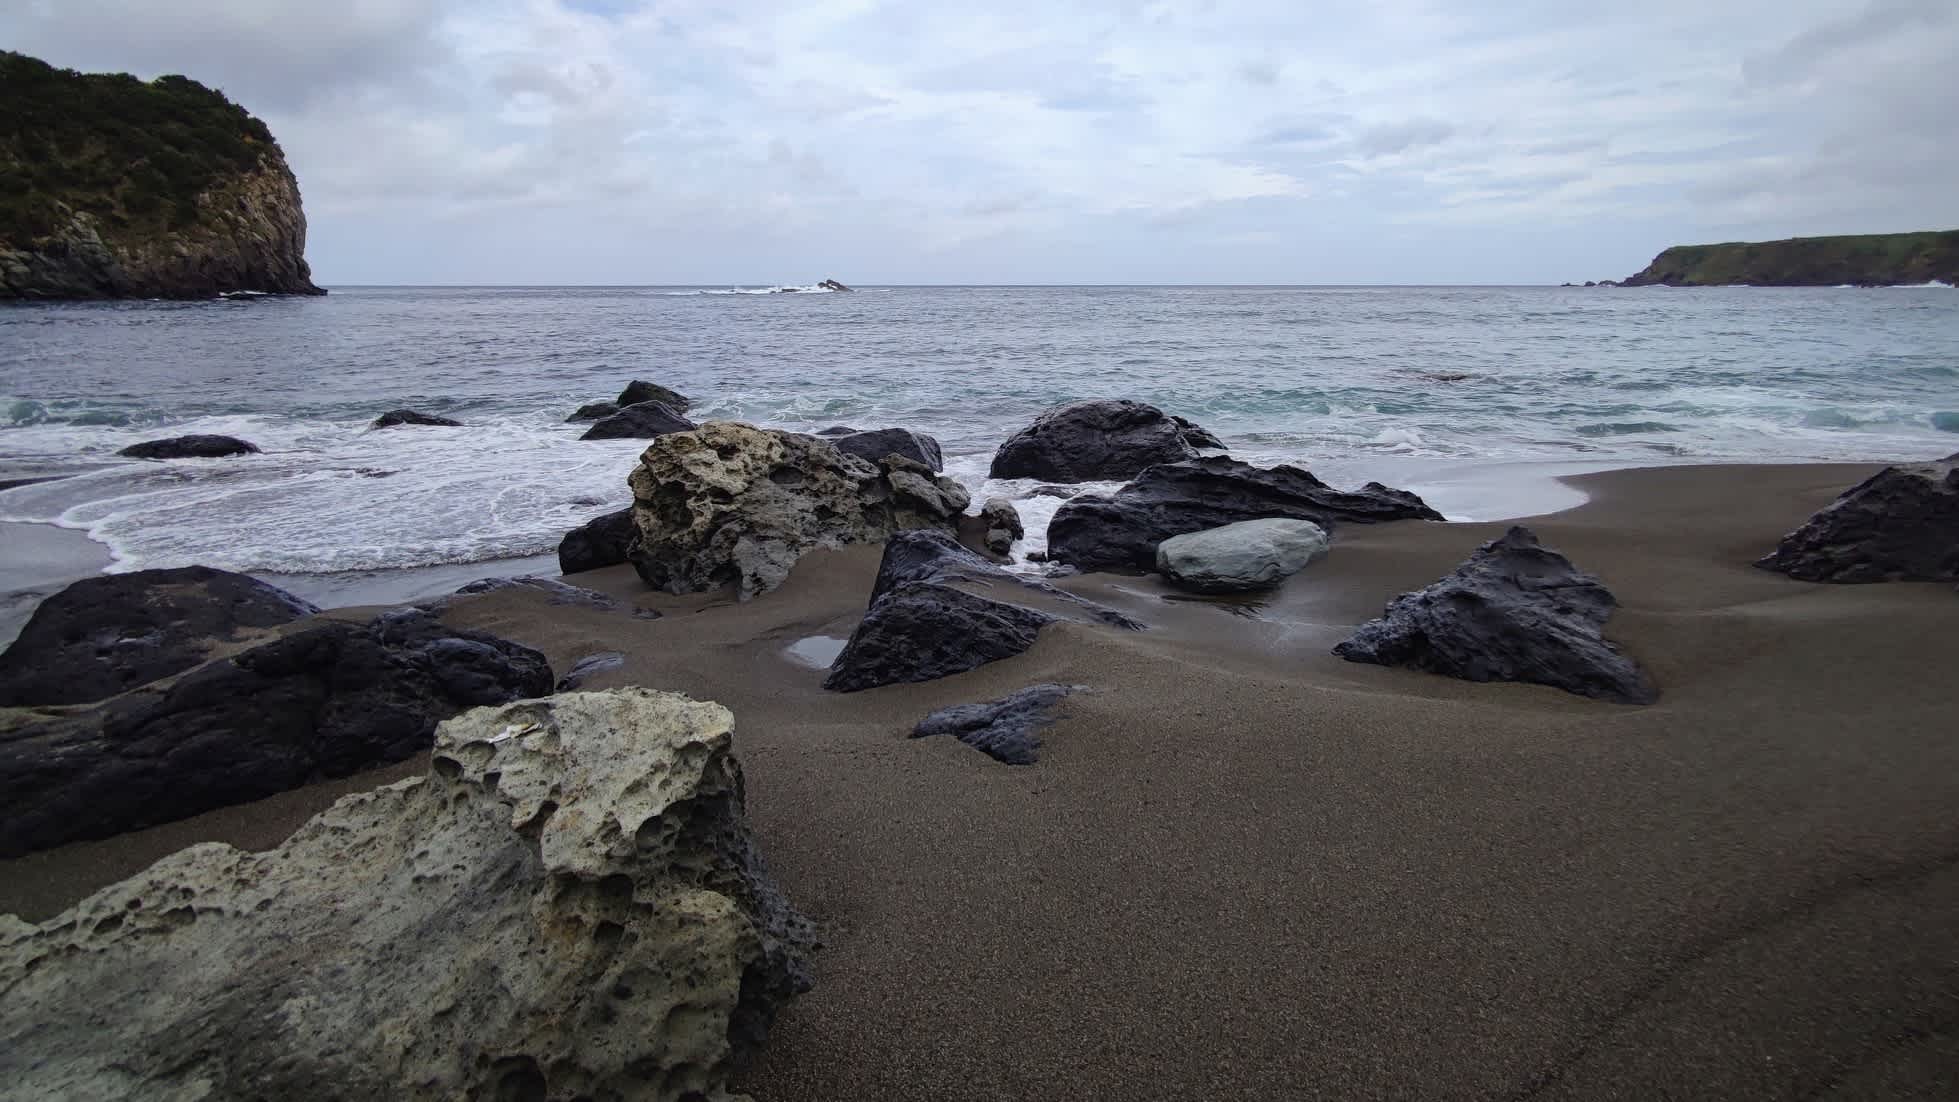 Schwarzer Sandstrand auf der Vulkaninsel Corvo, Azoren, Portugal bei bewölktem Wetter und mit Felsen im Bild.

